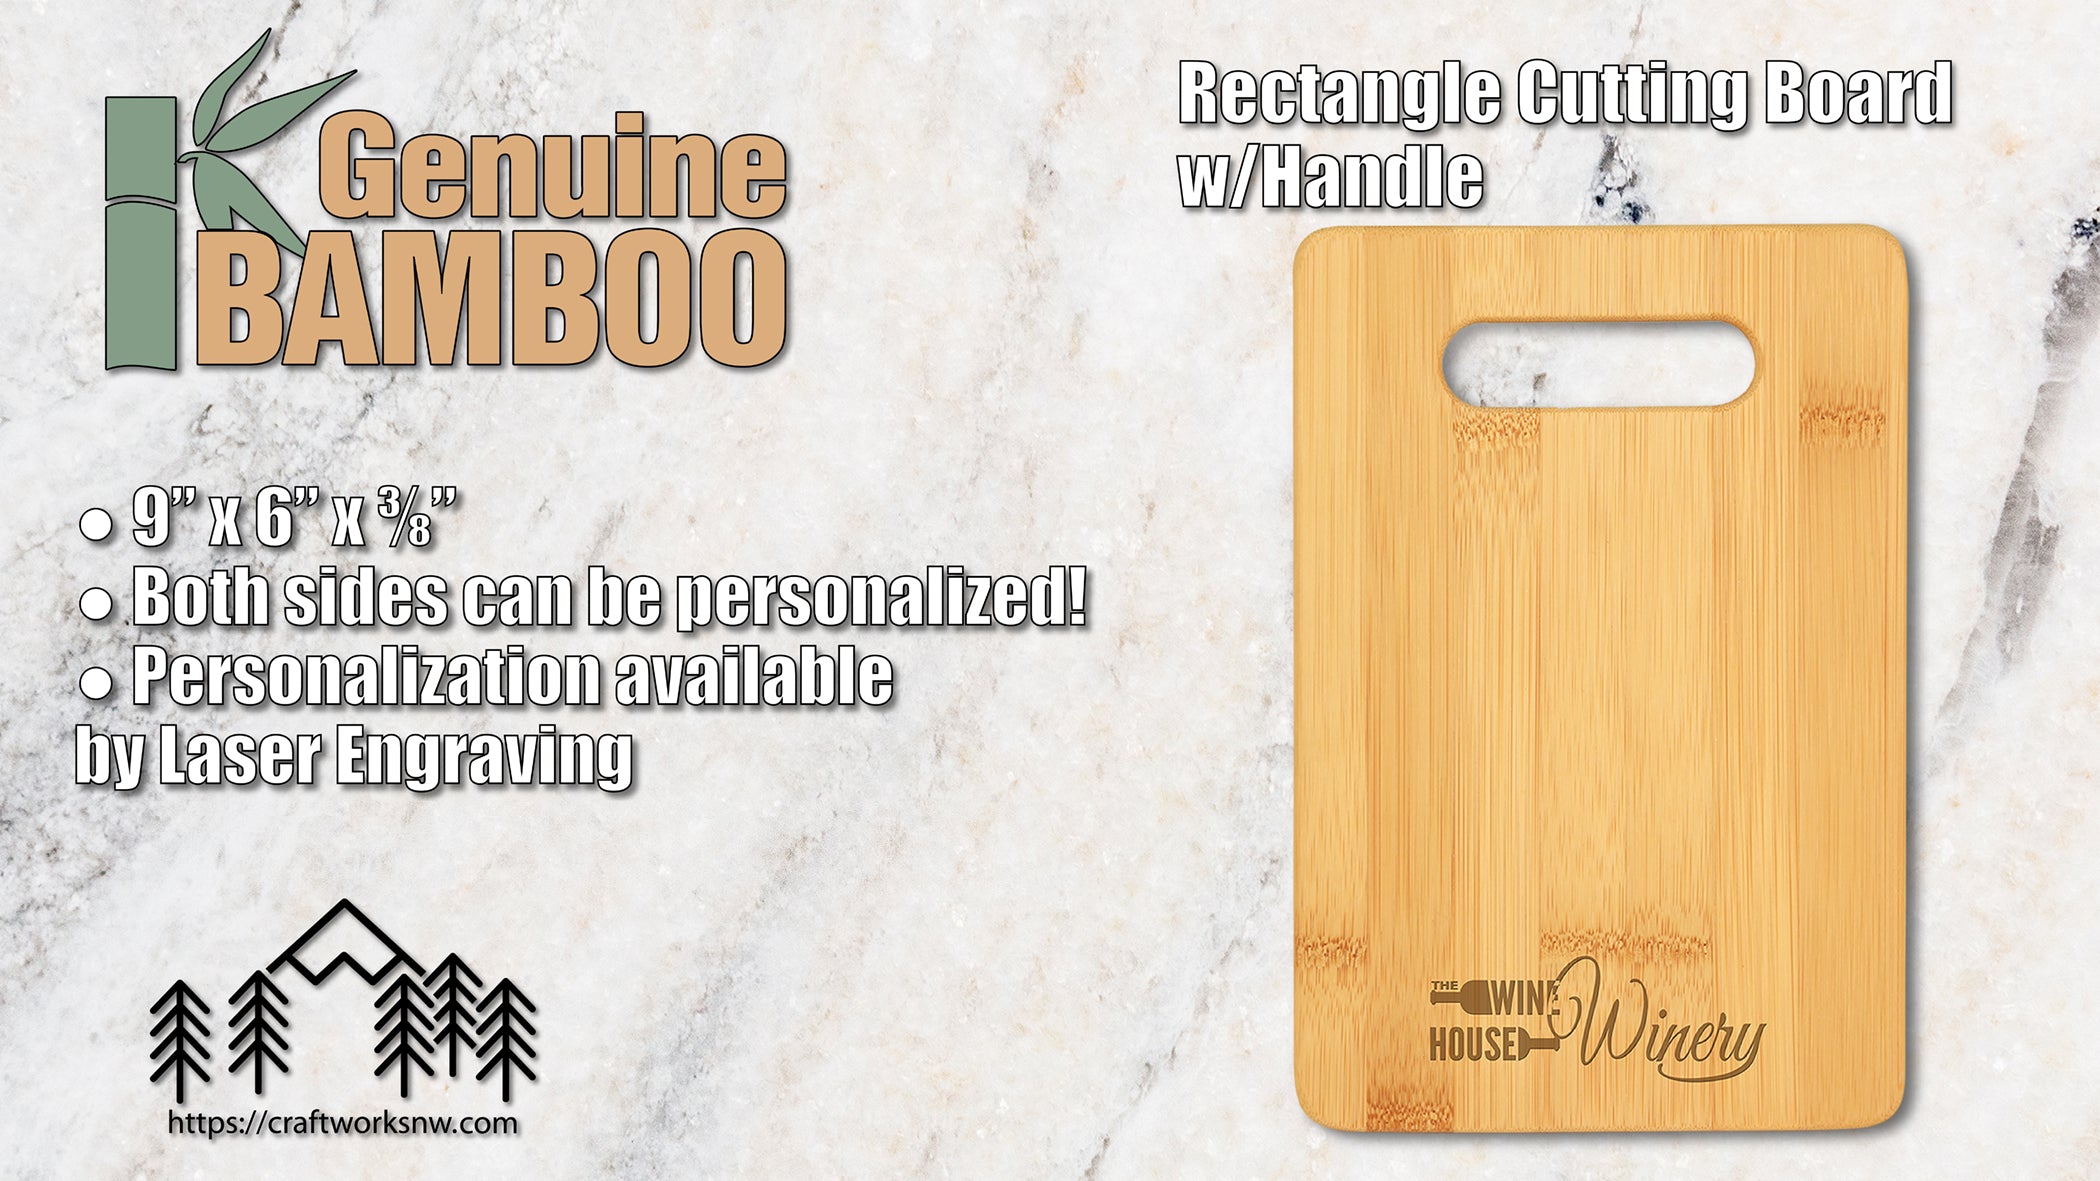 Bar Cutting Board, Bamboo, 9" x 6", Laser Engraved - Craftworks NW, LLC